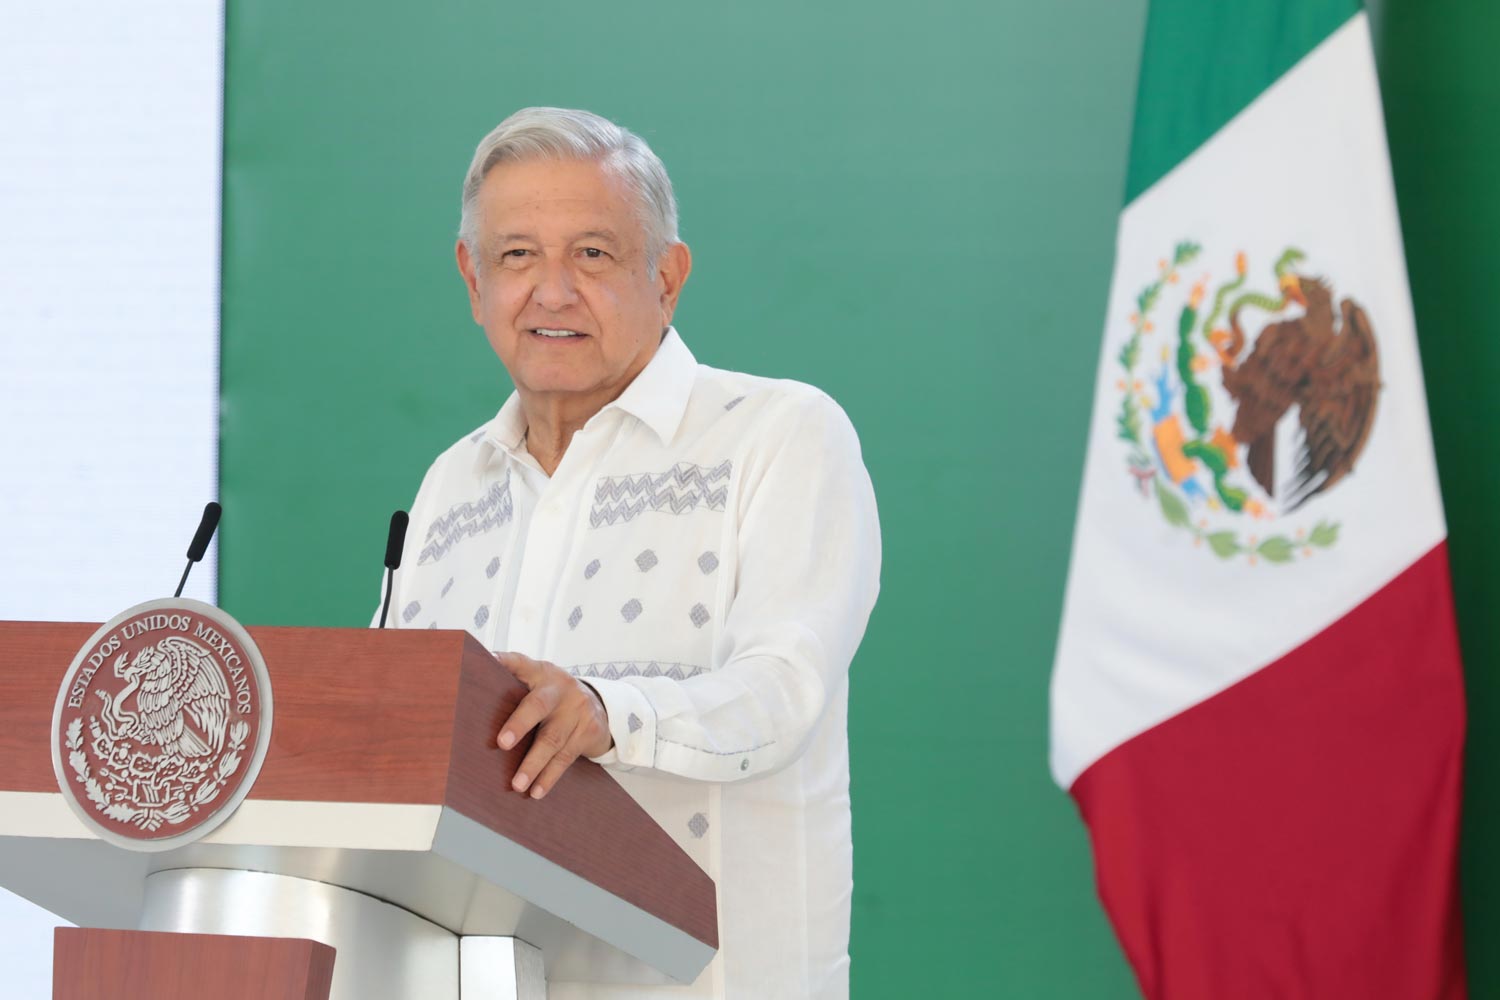 Conferencia de prensa matutina del presidente Andrés Manuel López Obrador en Acapulco, Guerrero. Lunes 19 de julio de 2021. Versión estenográfica.